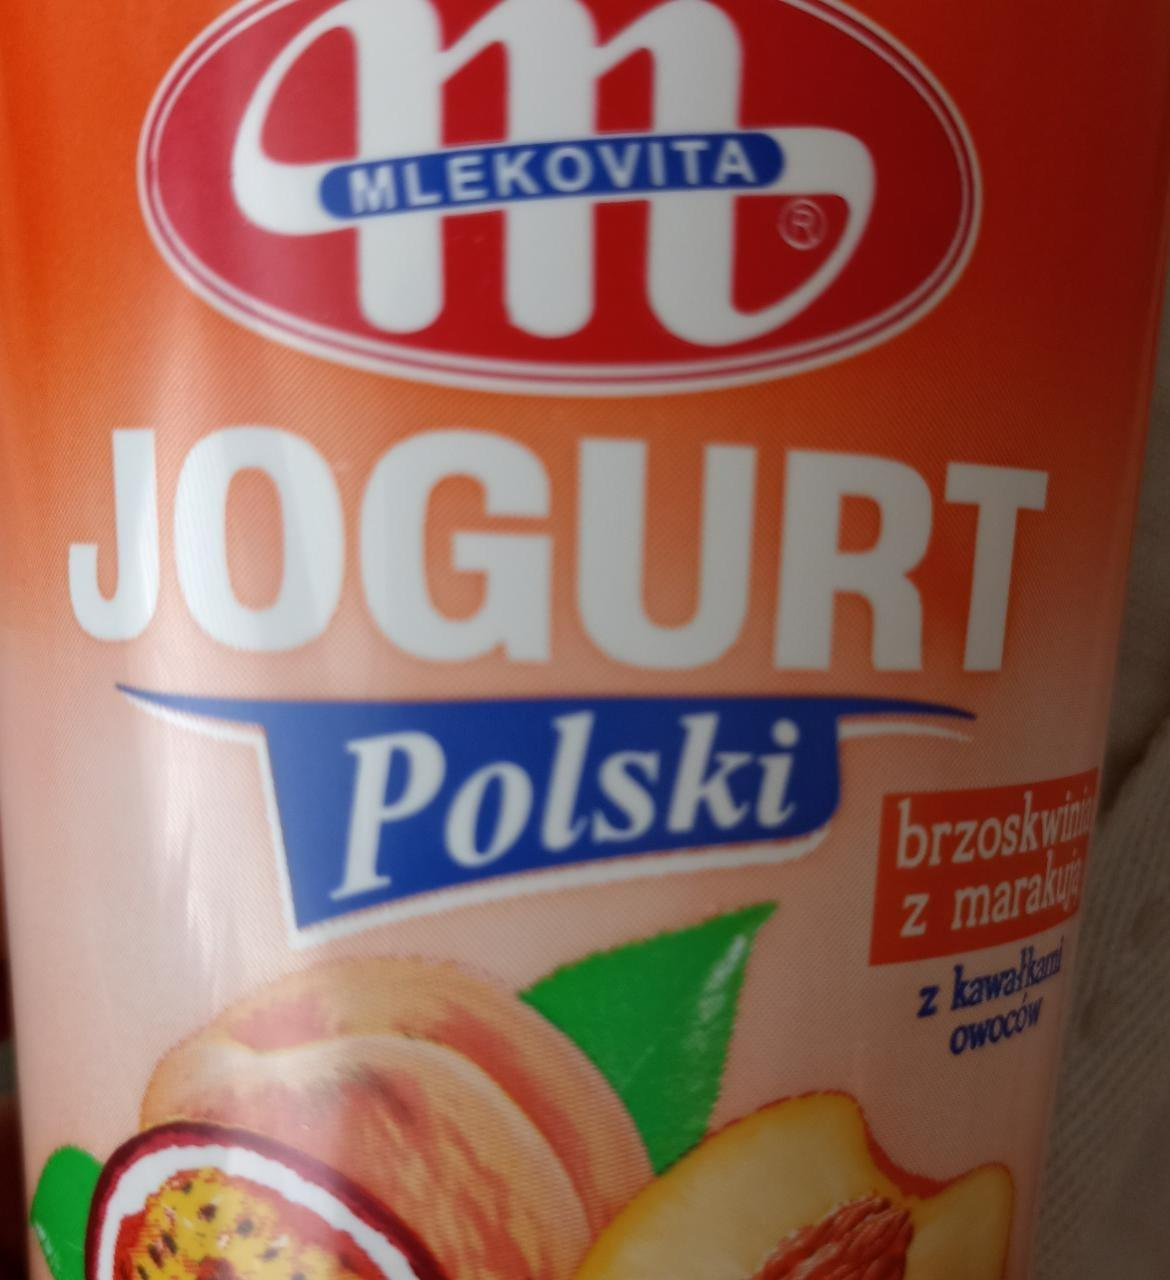 Фото - Jogurt Polski brzoskwinia z marakuja z kawalkami owoców Mlekovita